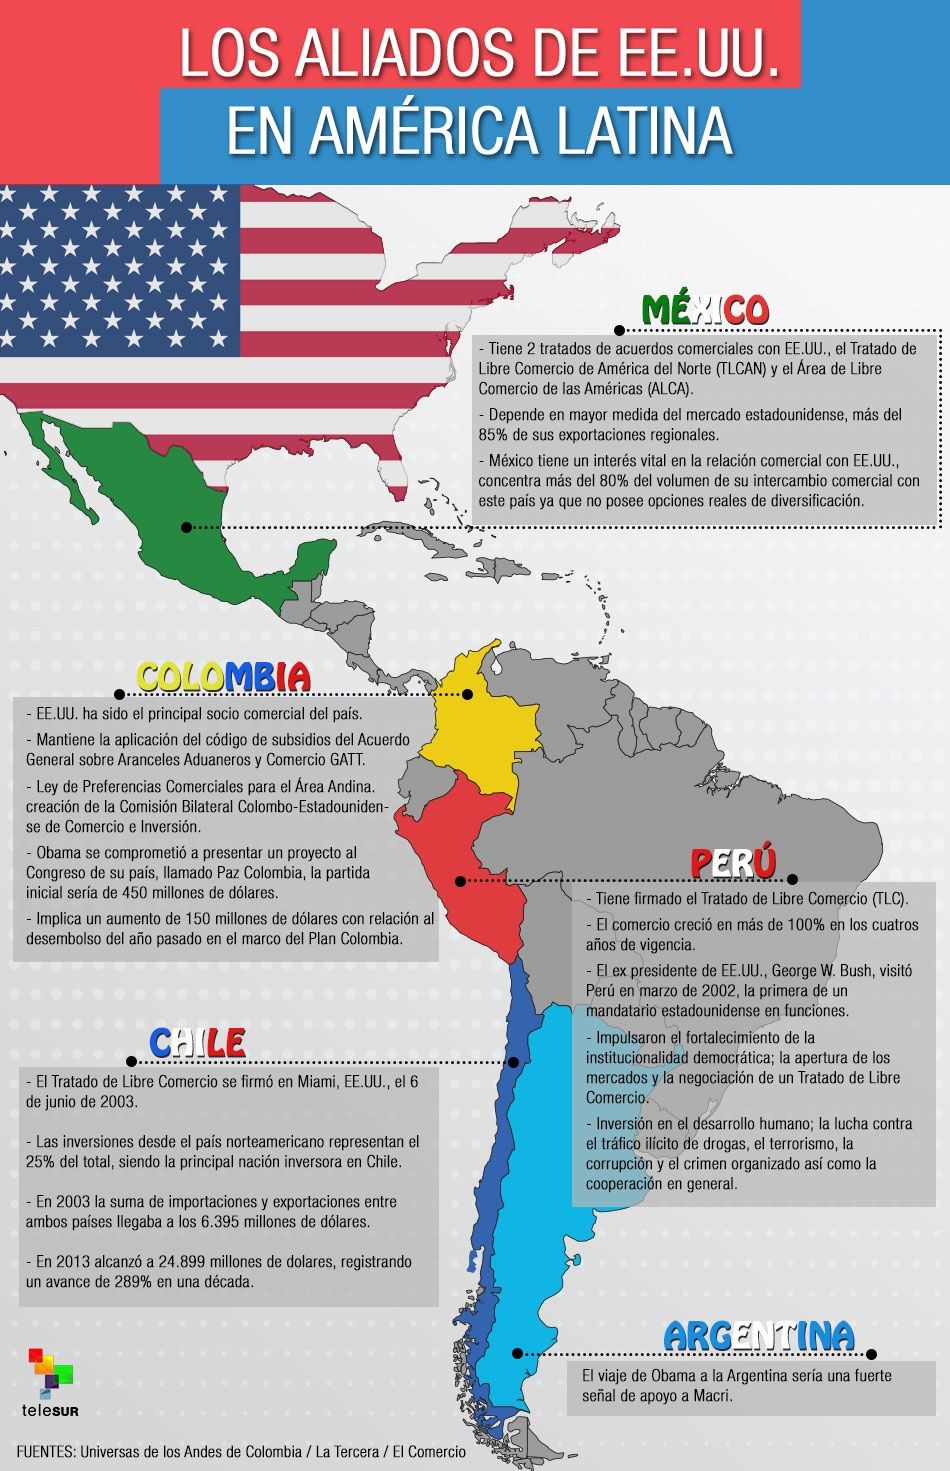 Los países aliados de Estados Unidos en América Latina